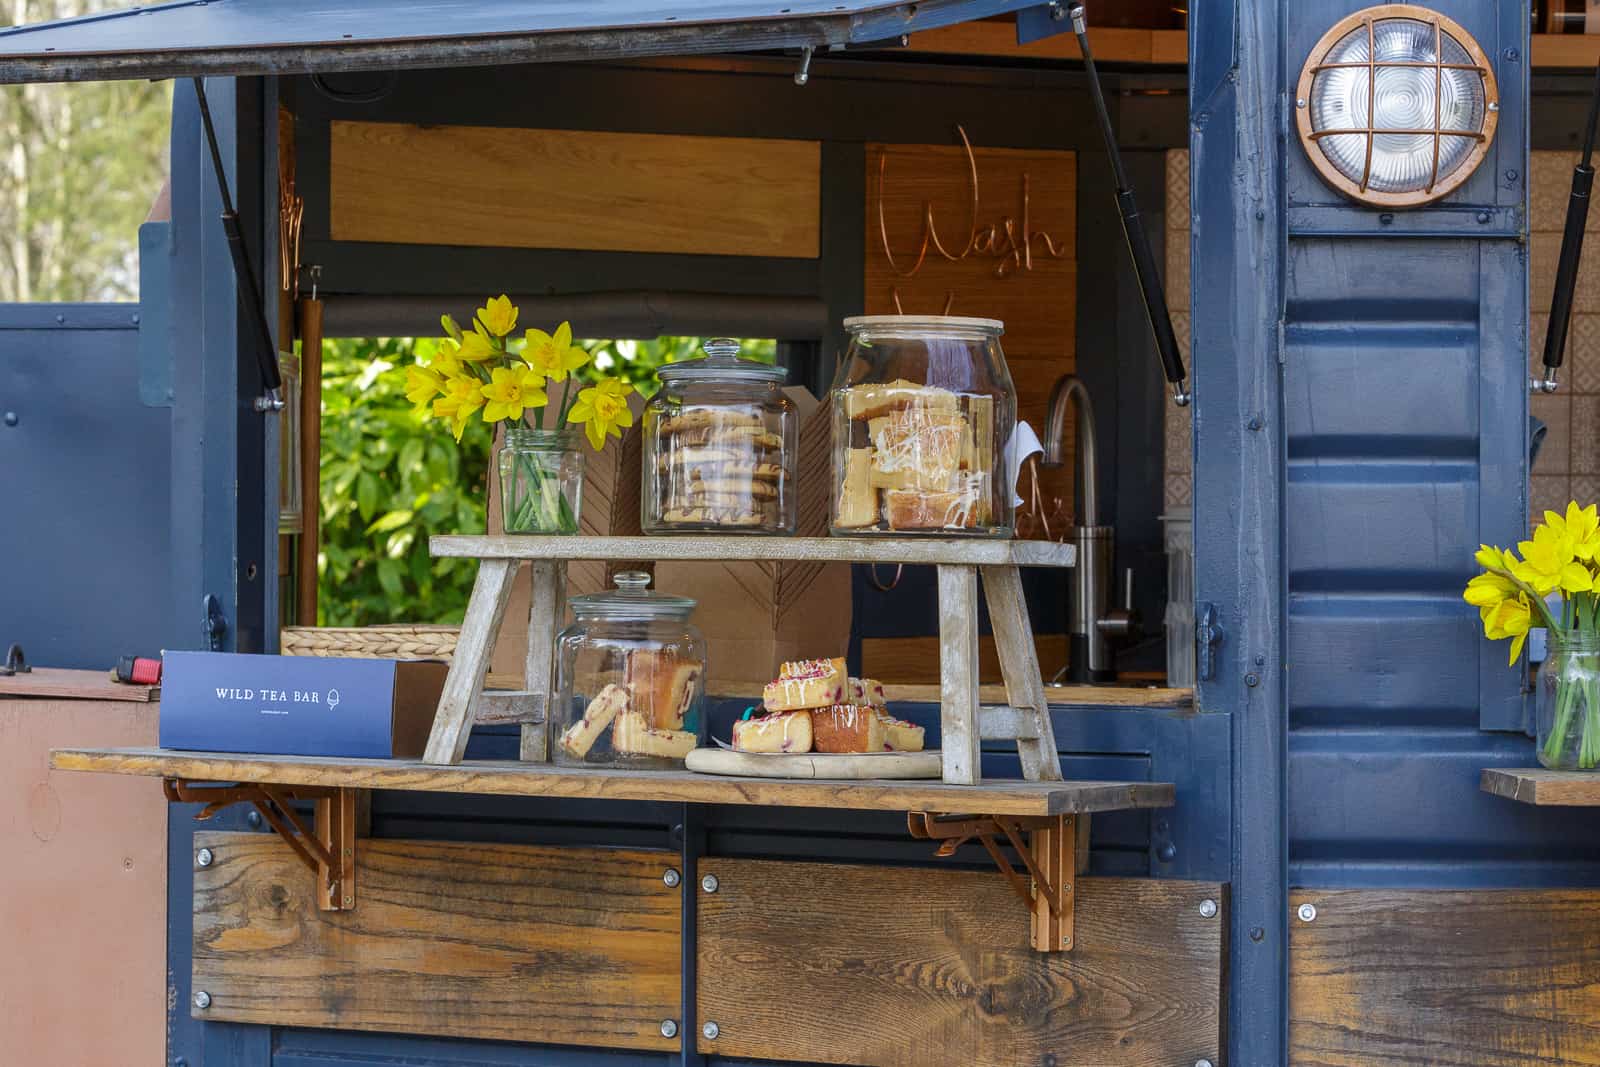 the wild tea bar horsebox food display counter